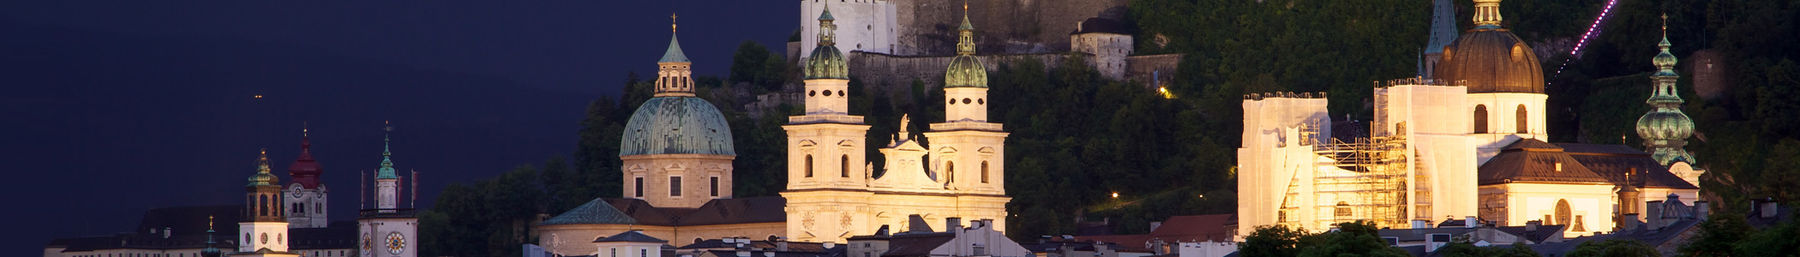 Salzburg afiş.jpg